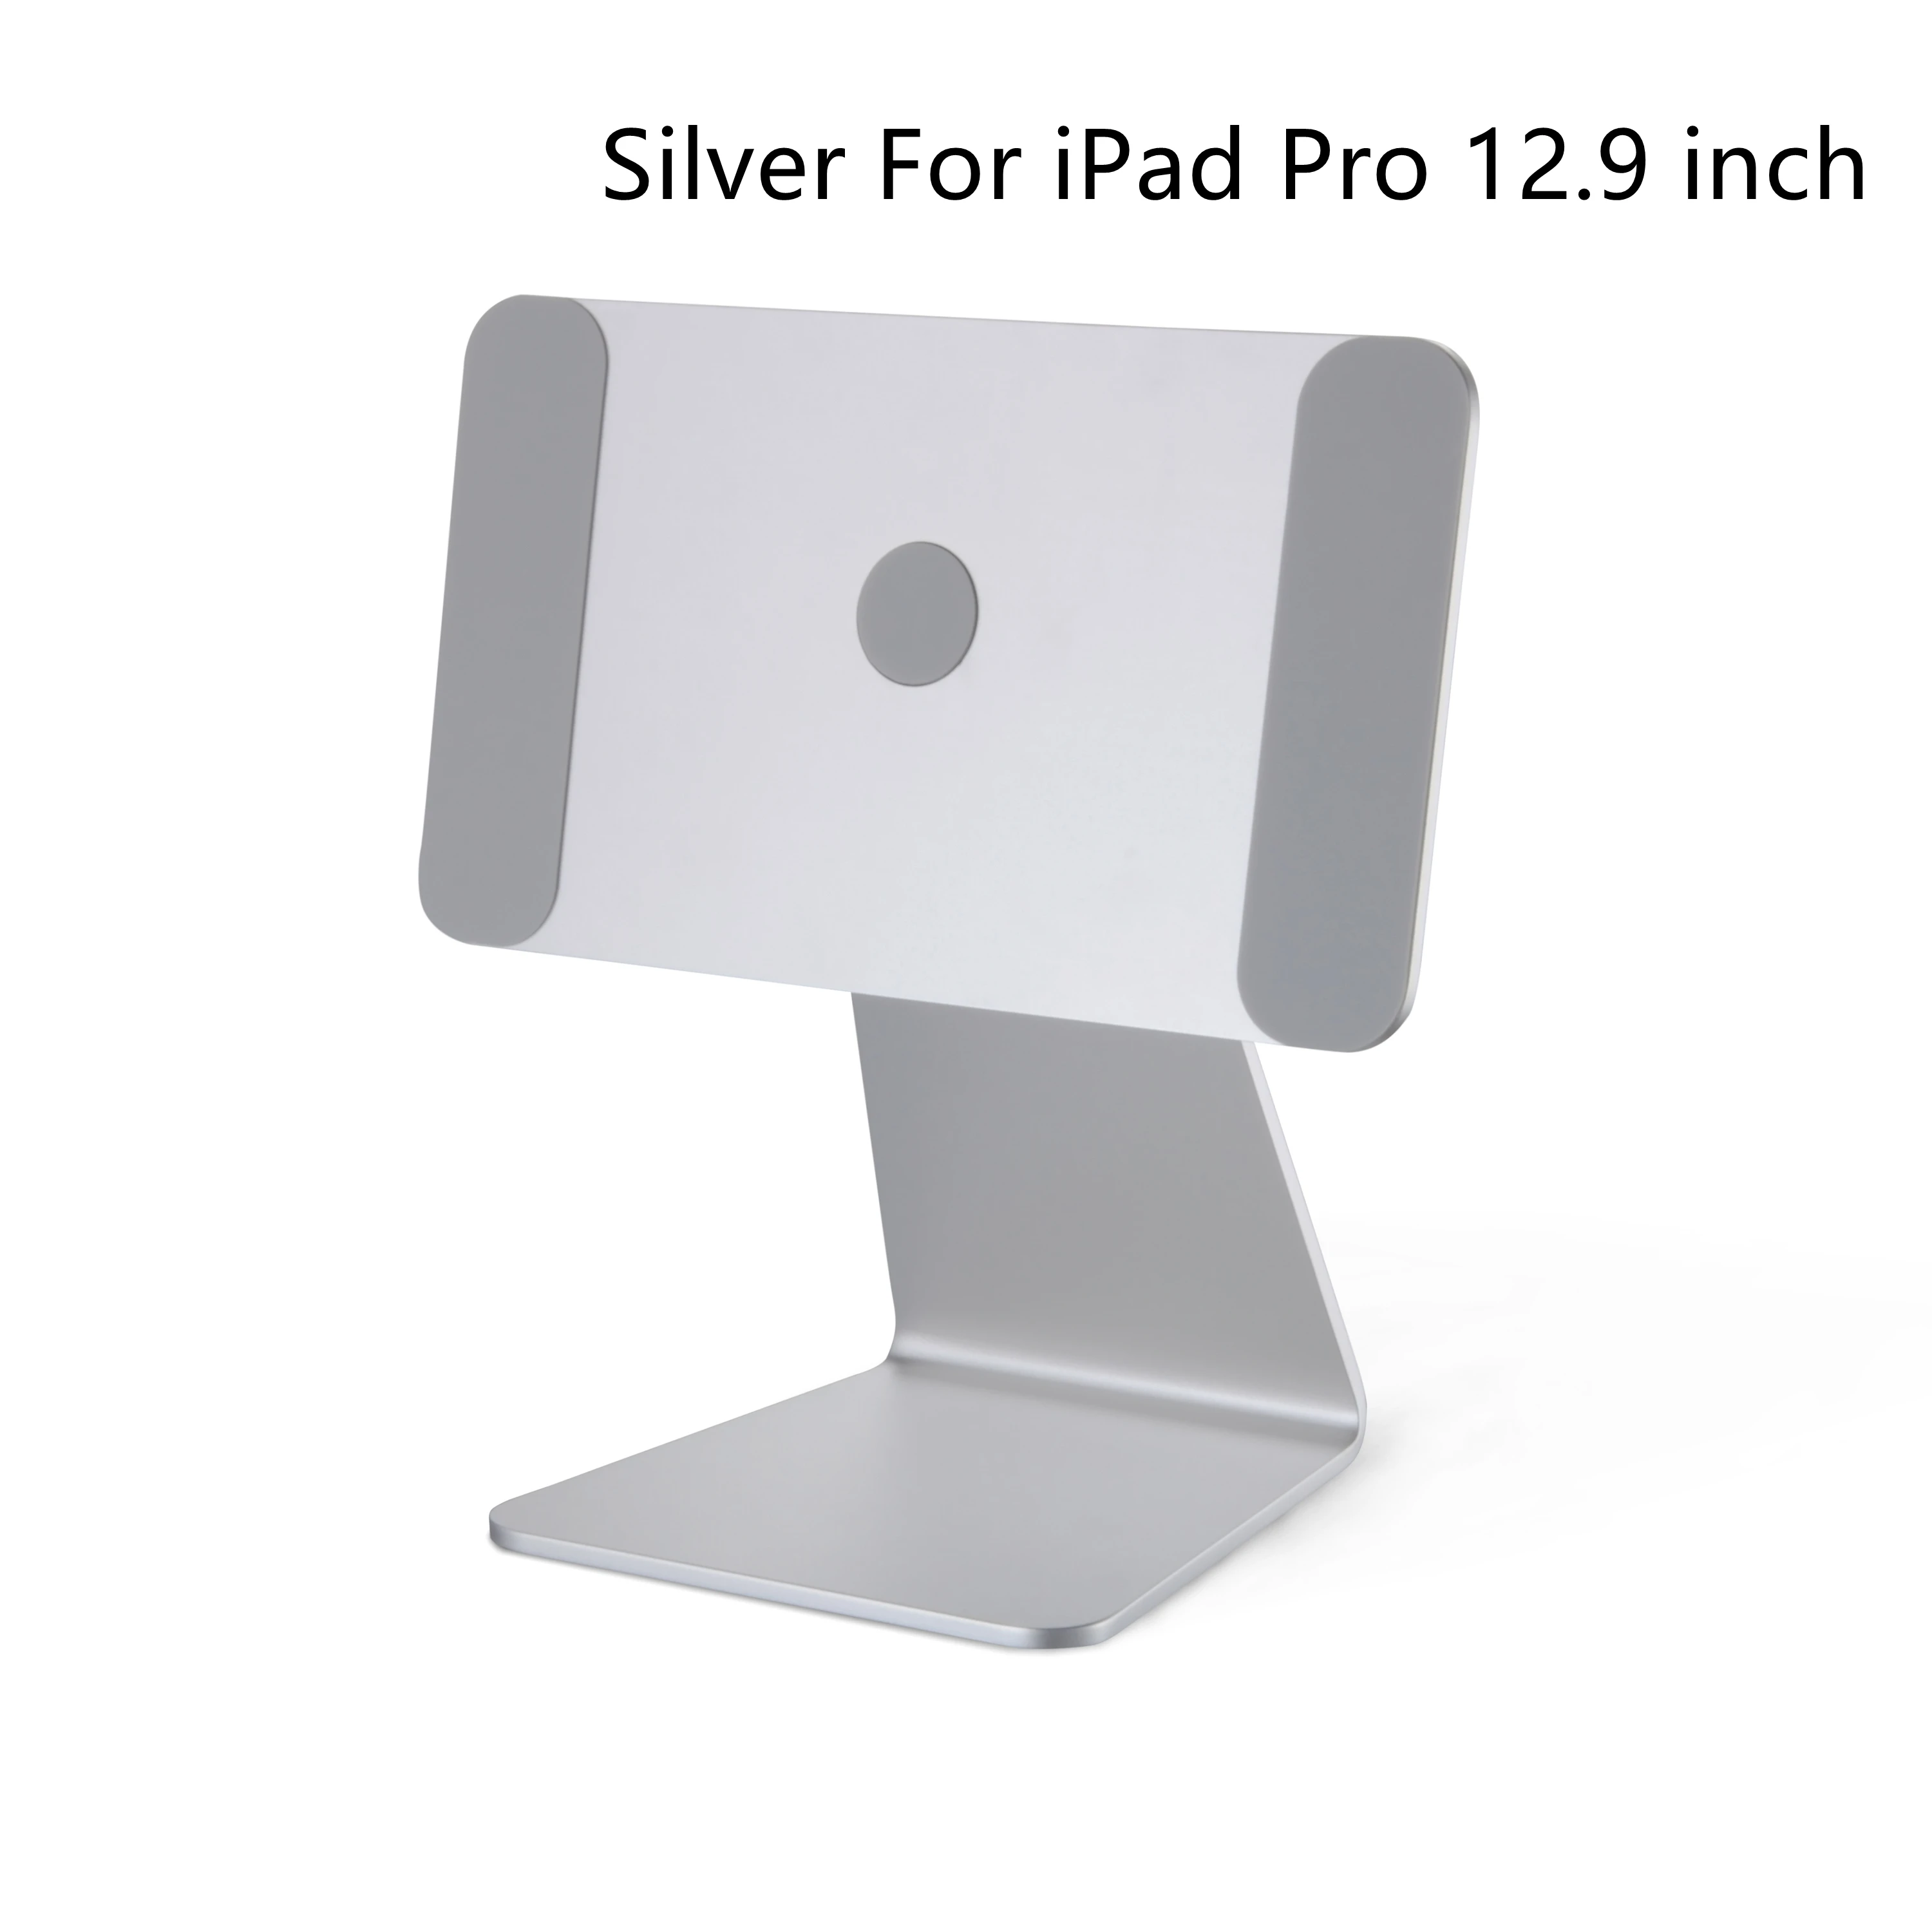 LULULOOK Magnetisch iPad Pro Ständer, Verstellbarer Faltbarer iPad 12.9  Ständer, 360° Drehbar Tragbarer Aluminium iPad Halterung für Apple iPad Pro